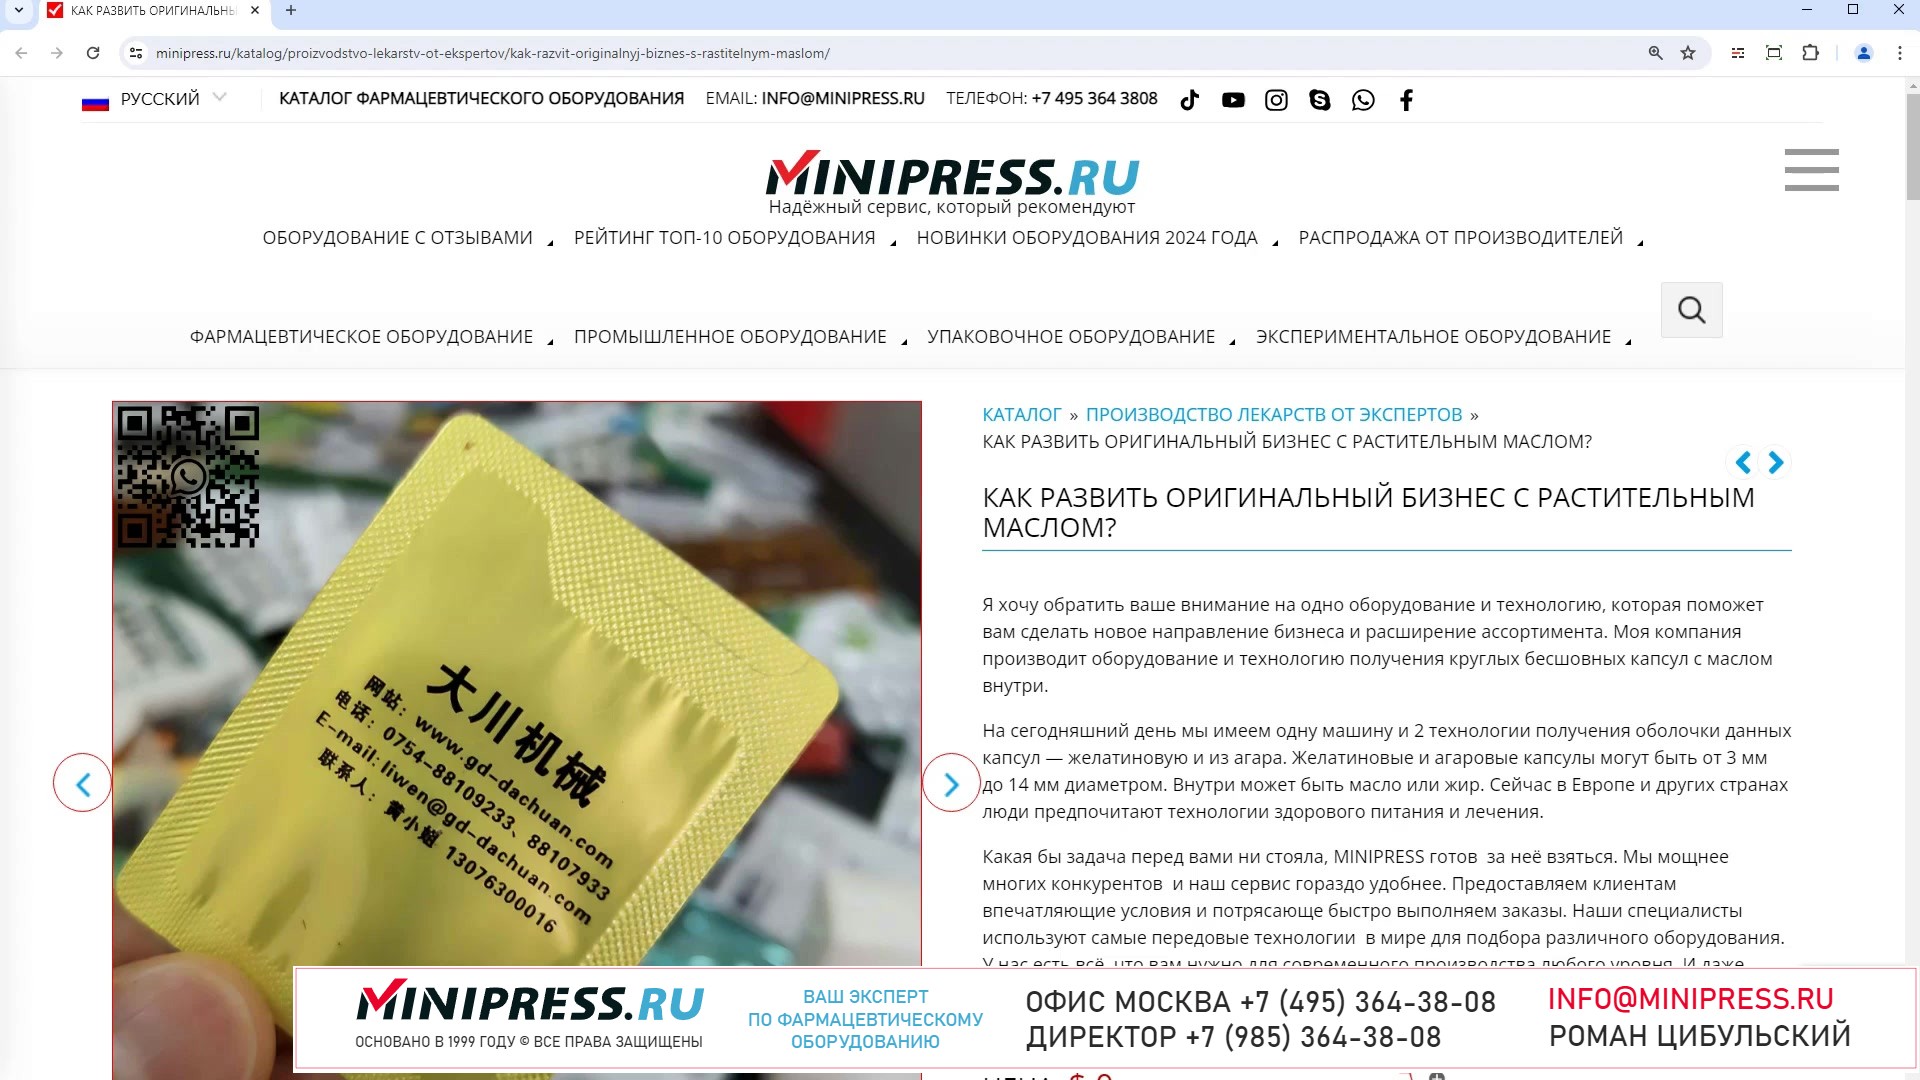 Minipress.ru Как развить оригинальный бизнес с растительным маслом